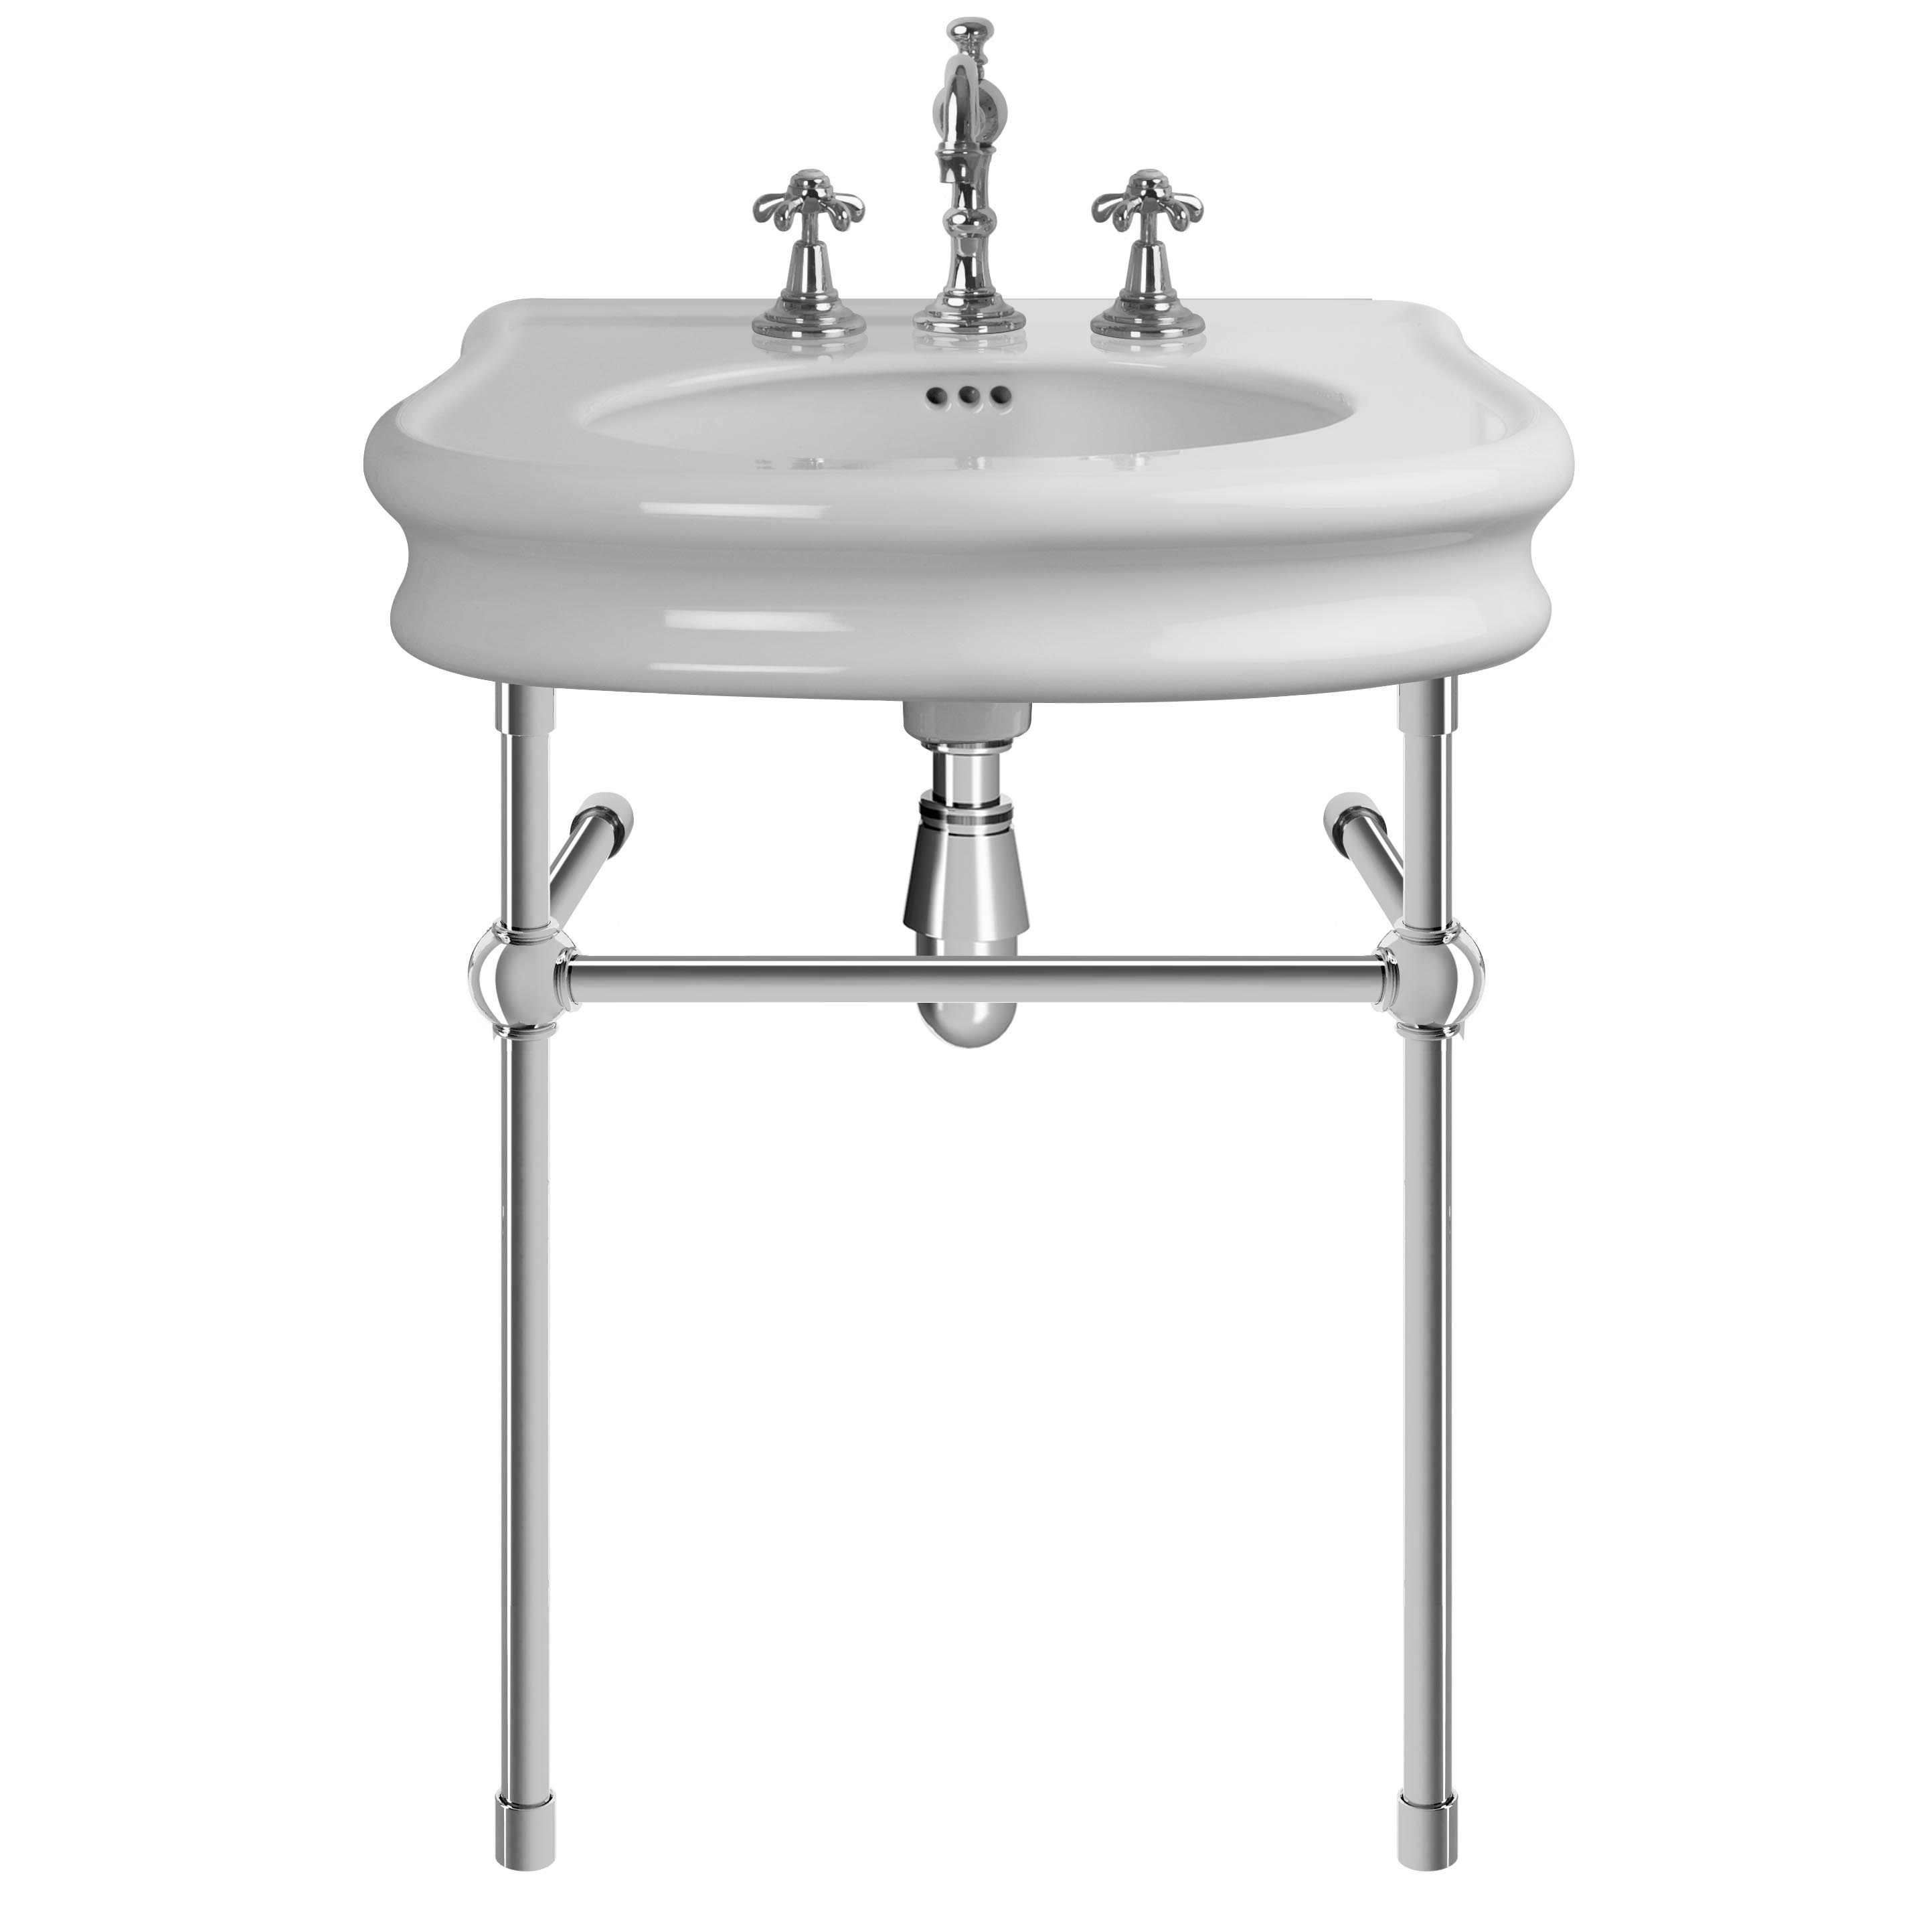 MS02-70-pietement-laiton Le Tréport washbasin on brass washstand, L. 70cm